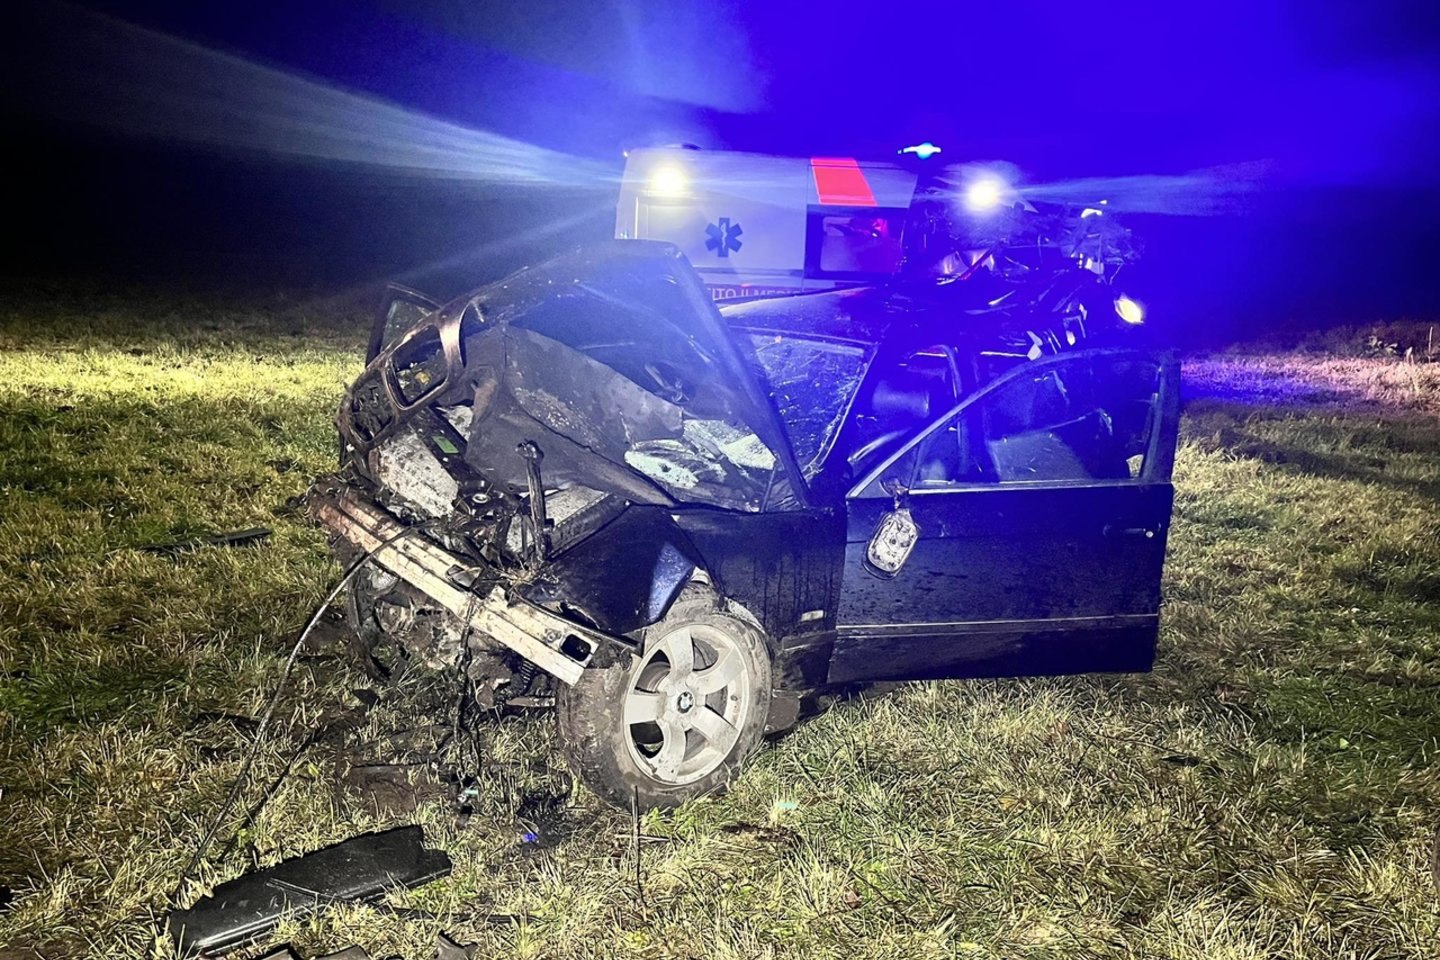  Lazdijų rajone per avariją žuvo šį BMW automobilį vairavęs 24 metų jaunuolis. <br> Alytaus apskrities VPK nuotr. 